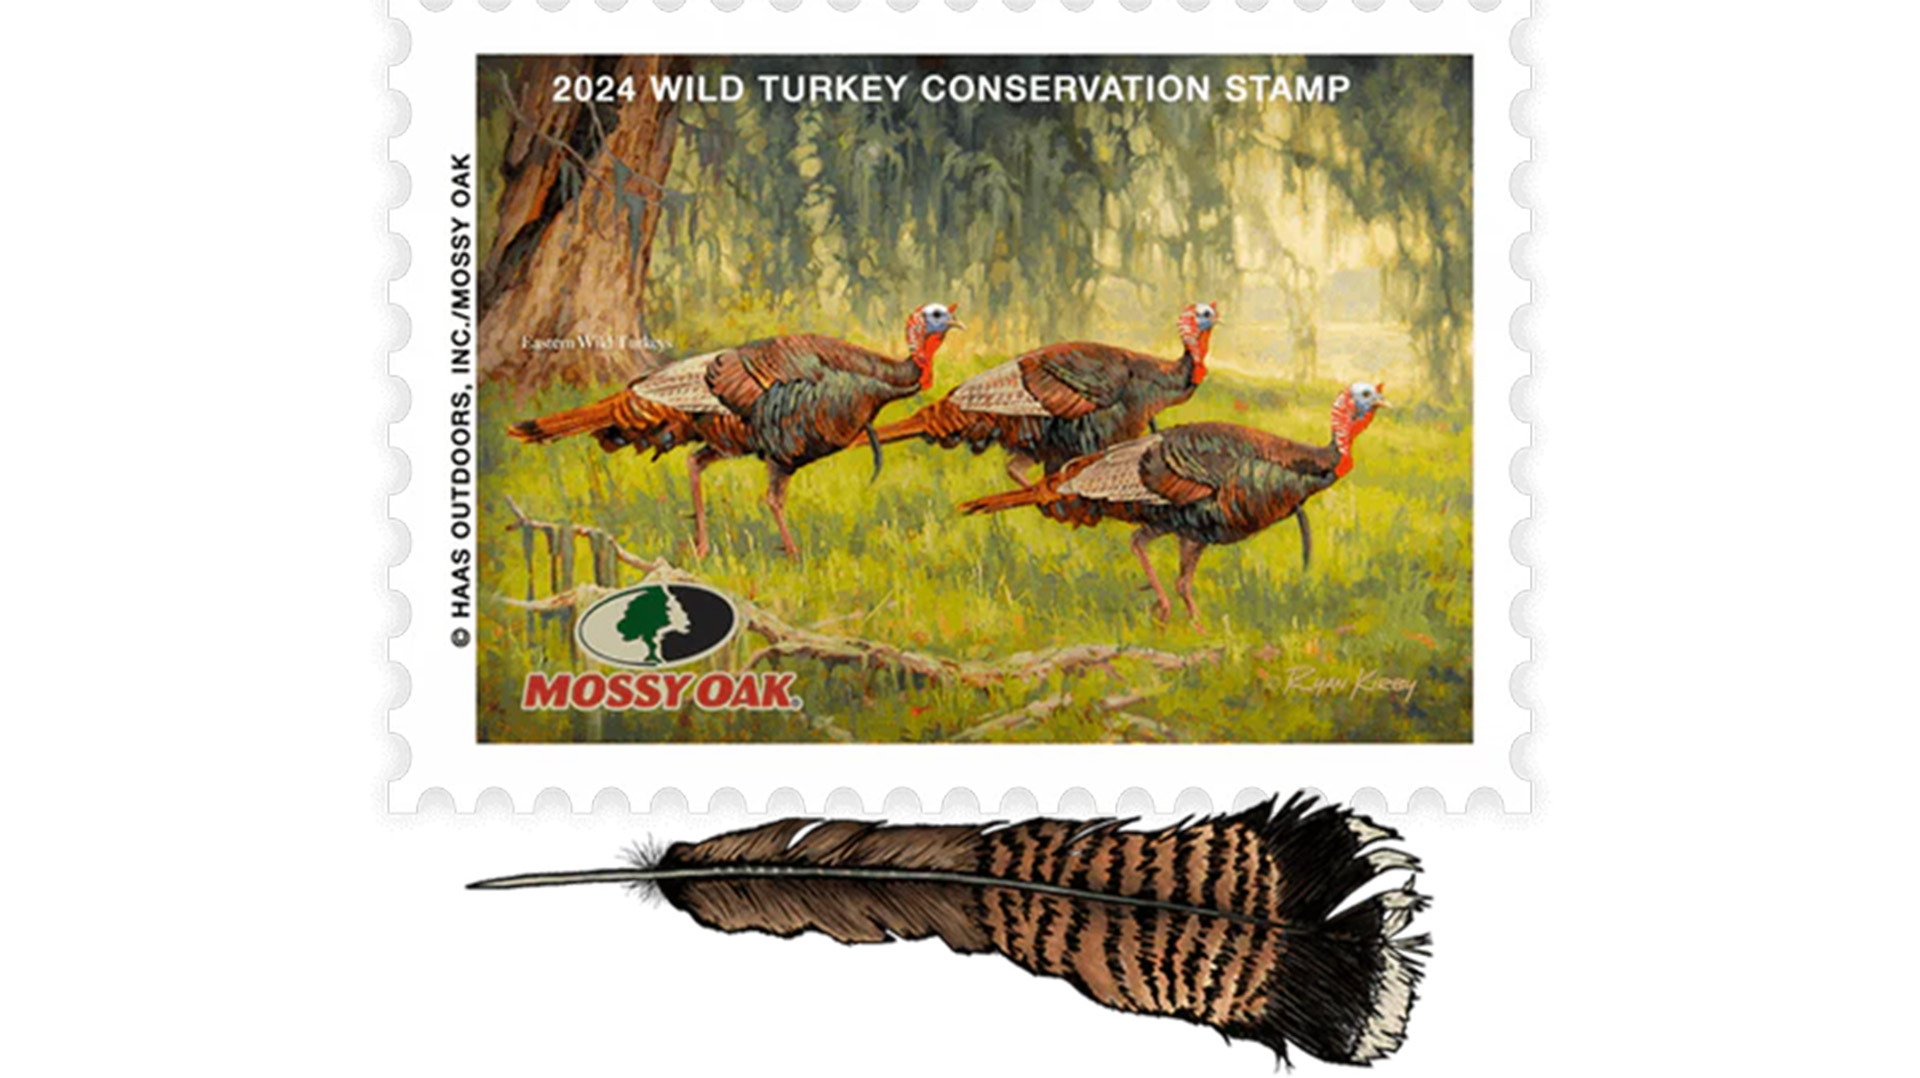 2024 Wild Turkey Conservation Stamp